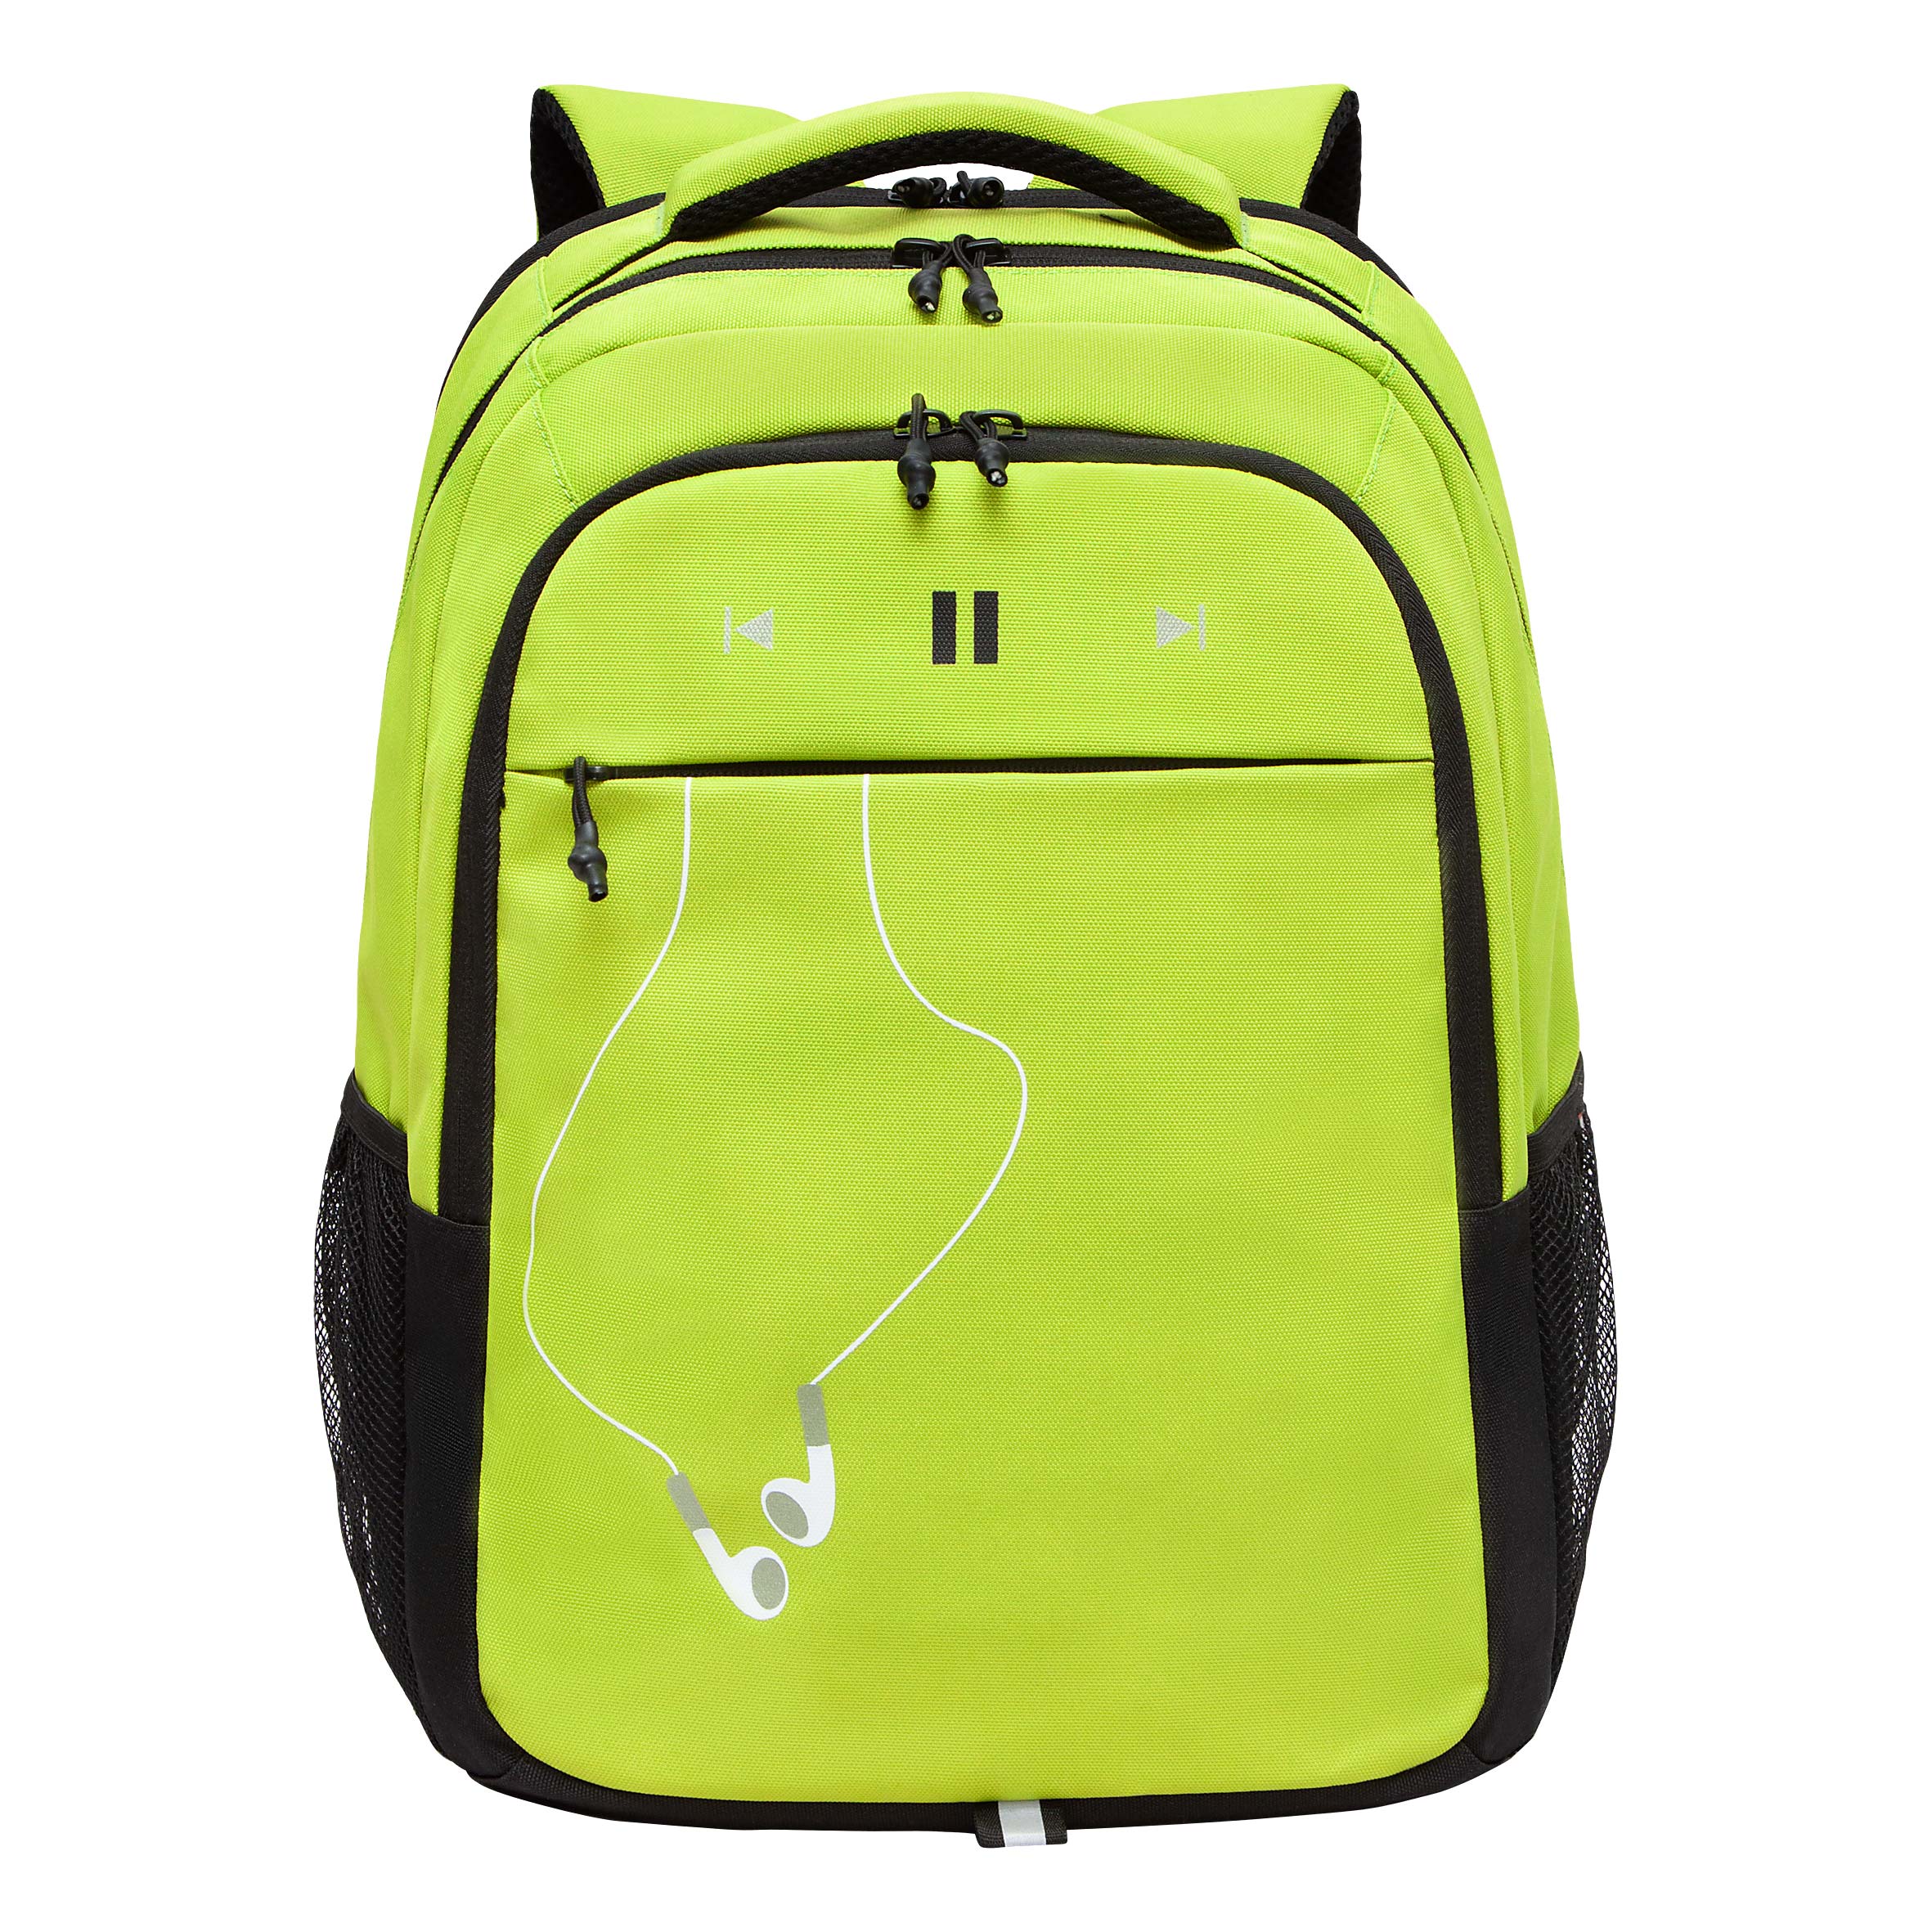 Рюкзак молодежный GRIZZLY с карманом для ноутбука 15, для мальчика, RU-432-4 4 рюкзак молодежный grizzly с карманом для ноутбука 13 для мальчика rb 456 3 2